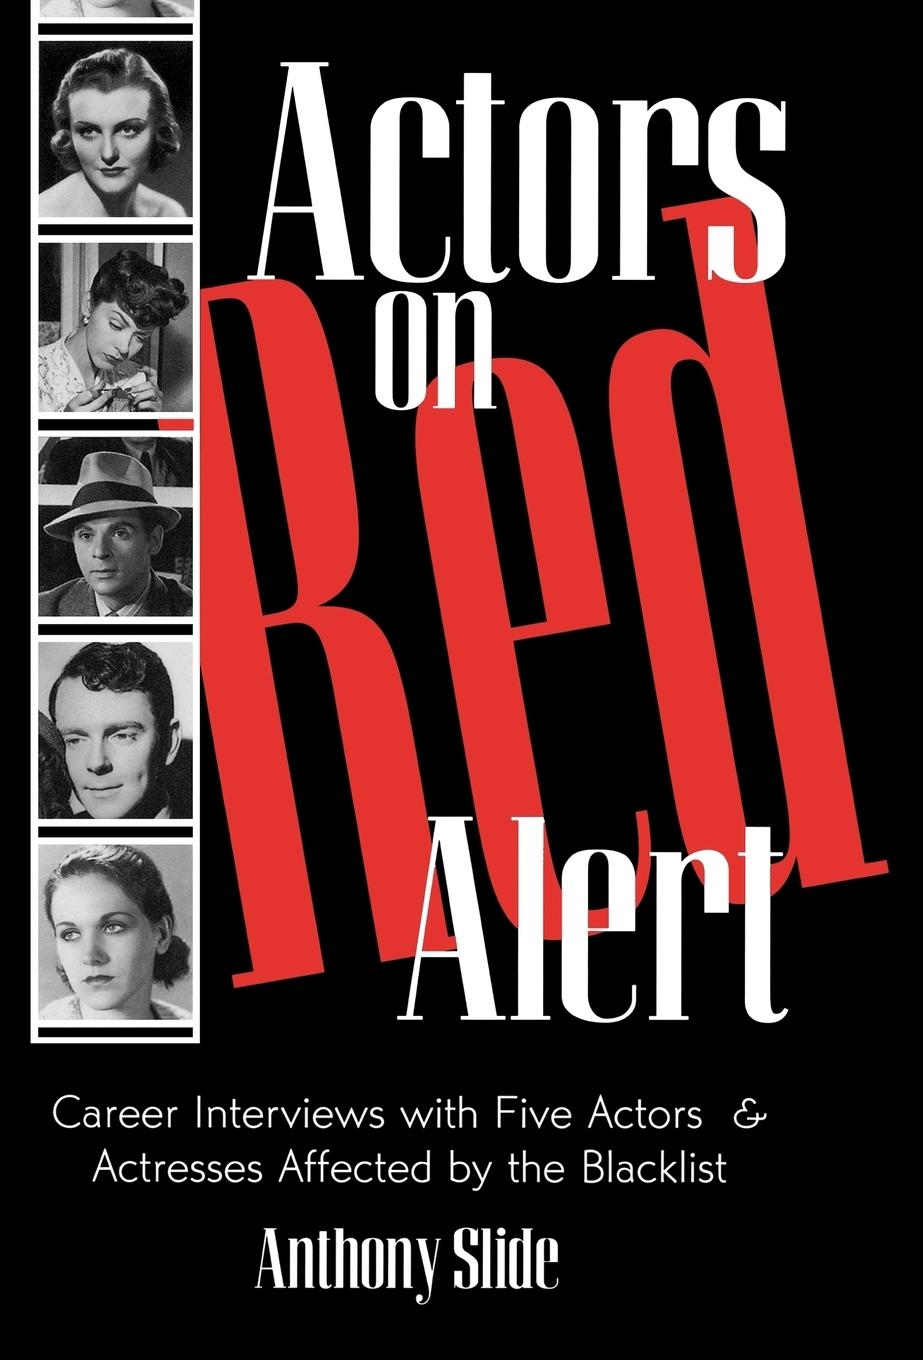 Actors on Red Alert - Slide, Anthony